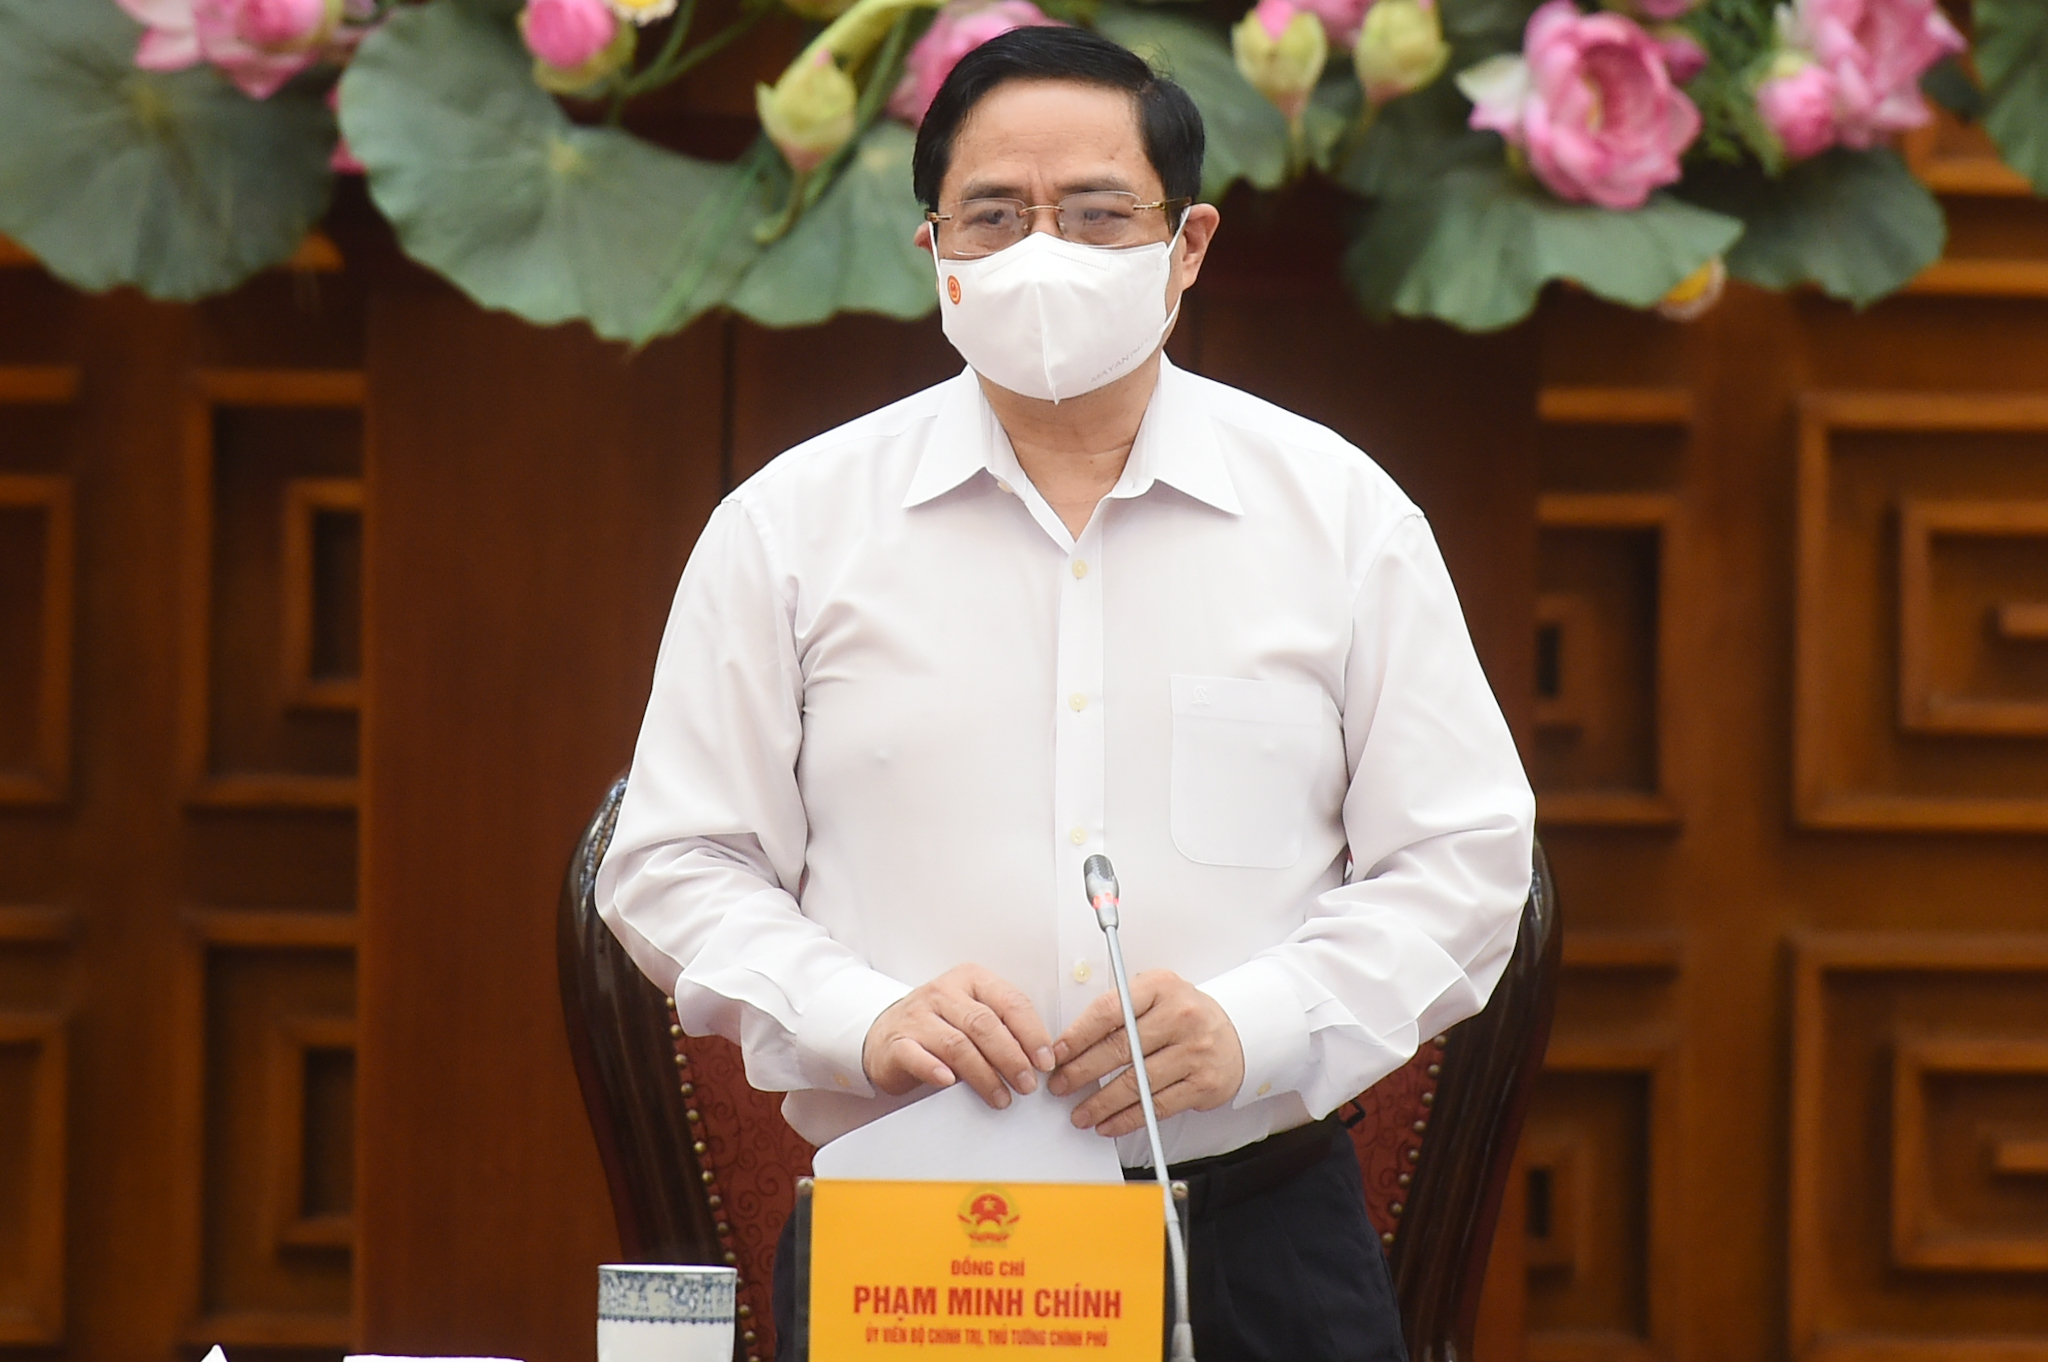 Đồng chí Phạm Minh Chính, Ủy viên Bộ Chính trị, Thủ tướng Chính phủ làm Trưởng Ban chỉ đạo Quốc gia phòng, chống dịch COVID-19